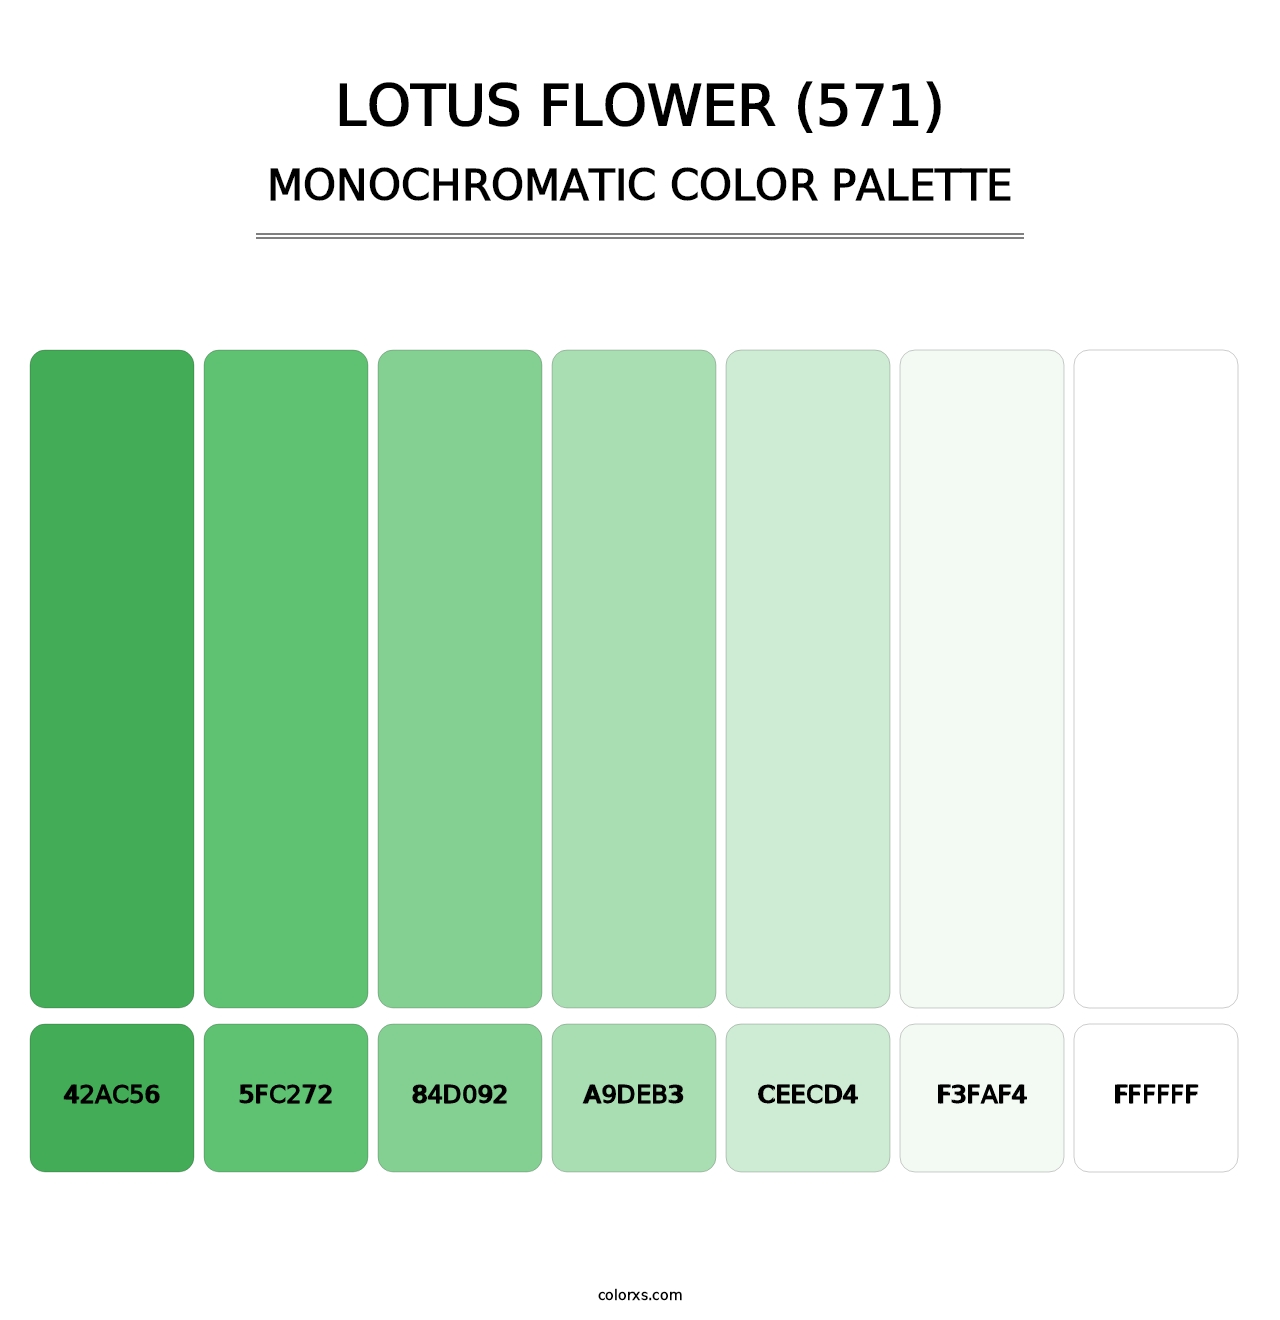 Lotus Flower (571) - Monochromatic Color Palette